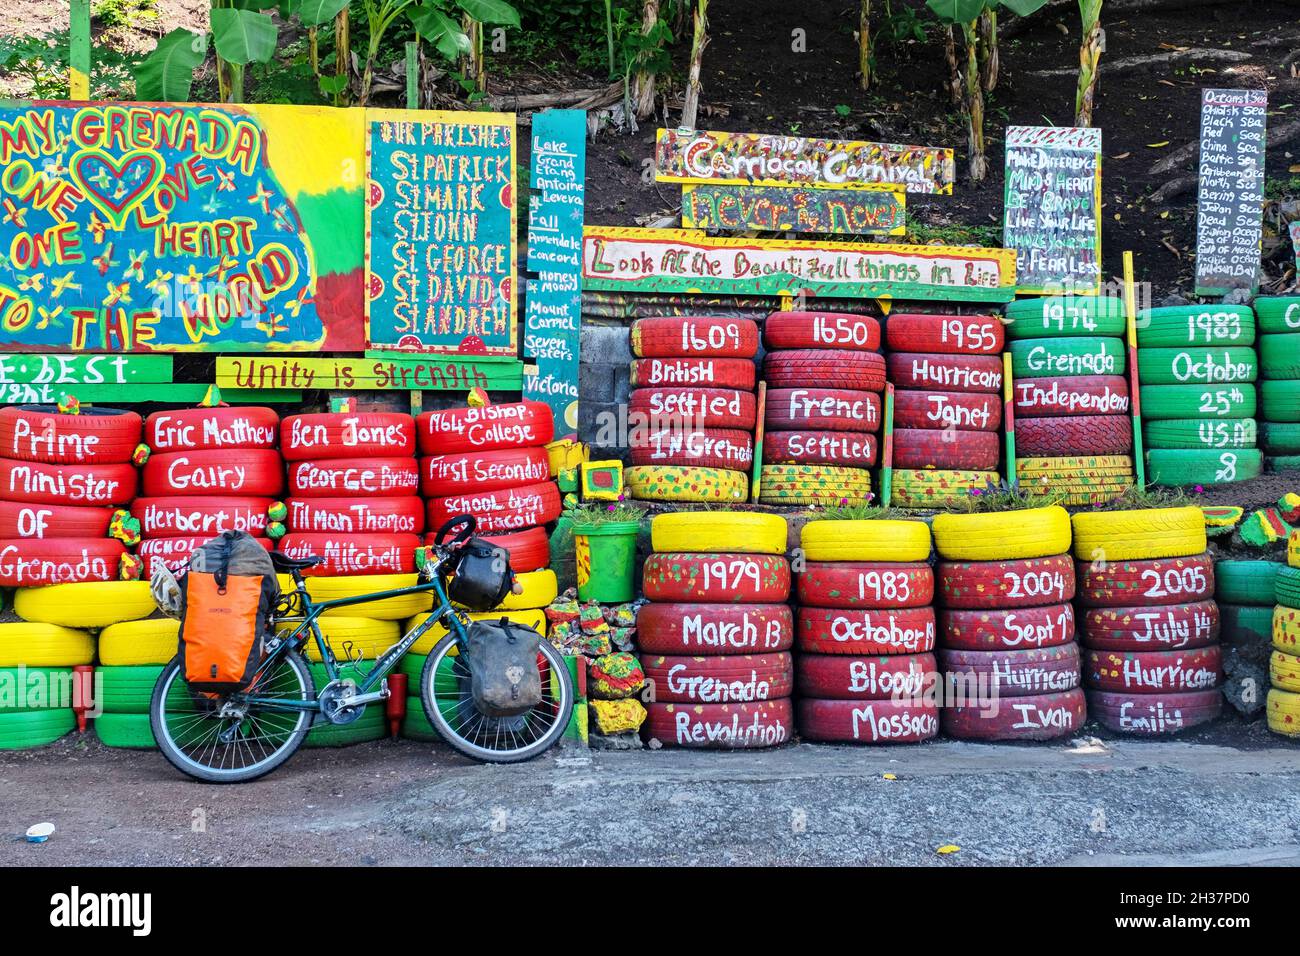 Mur de pneus de voiture aux couleurs de la Grenade sur Happy Hill en face de Charlie's bar, Saint George sur la côte ouest de l'île de Grenade, Caraïbes Banque D'Images